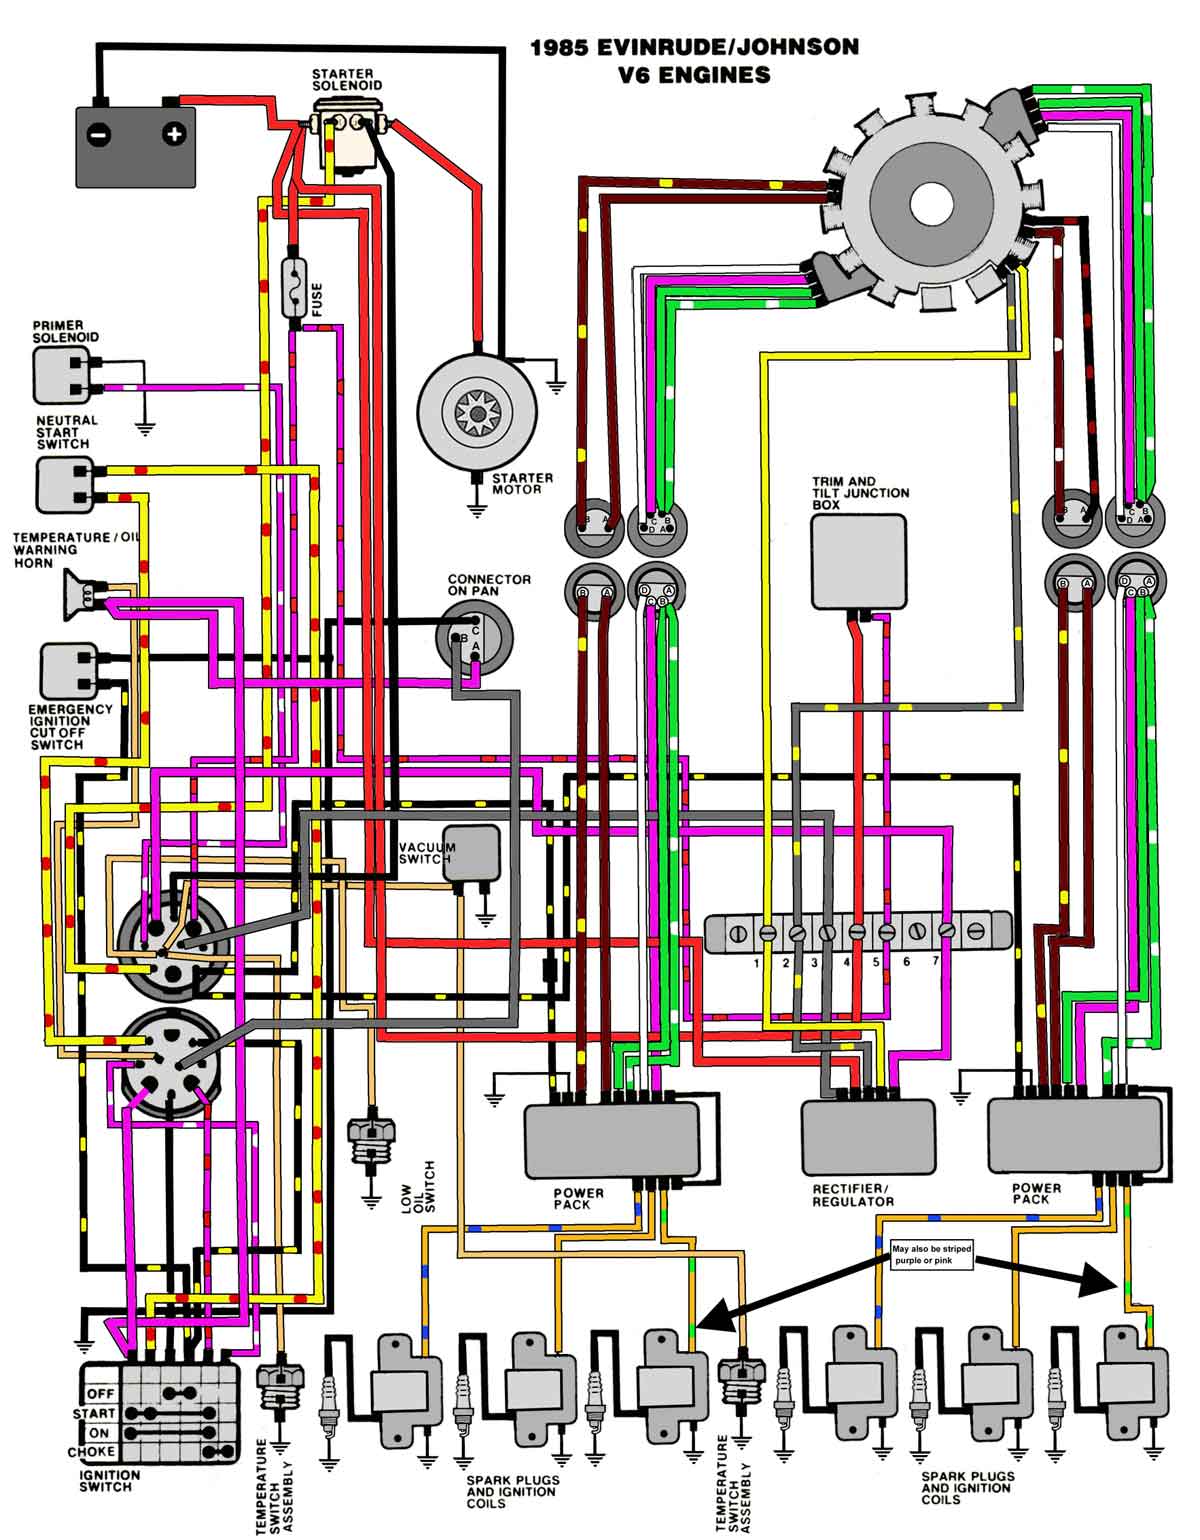 Wiring Diagram 81 Evinrude 85hp Trim Solenoid Wiring Diagram Full Version Hd Quality Wiring Diagram Inflatablesales Sansecondoweb It